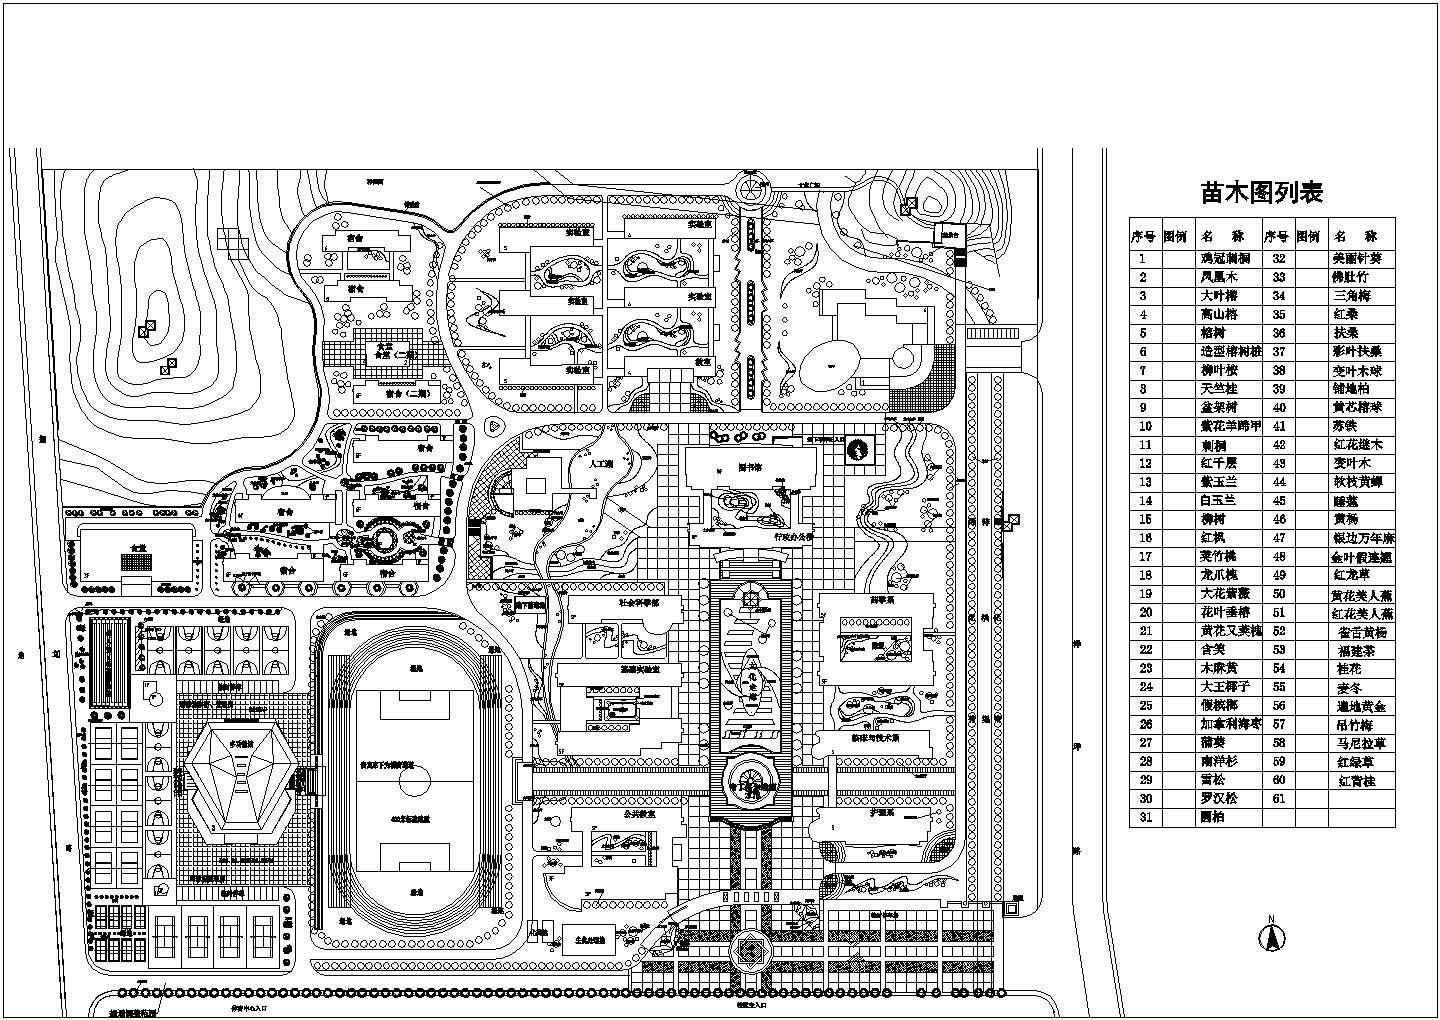 某学校CAD设计详细大样总体规划图